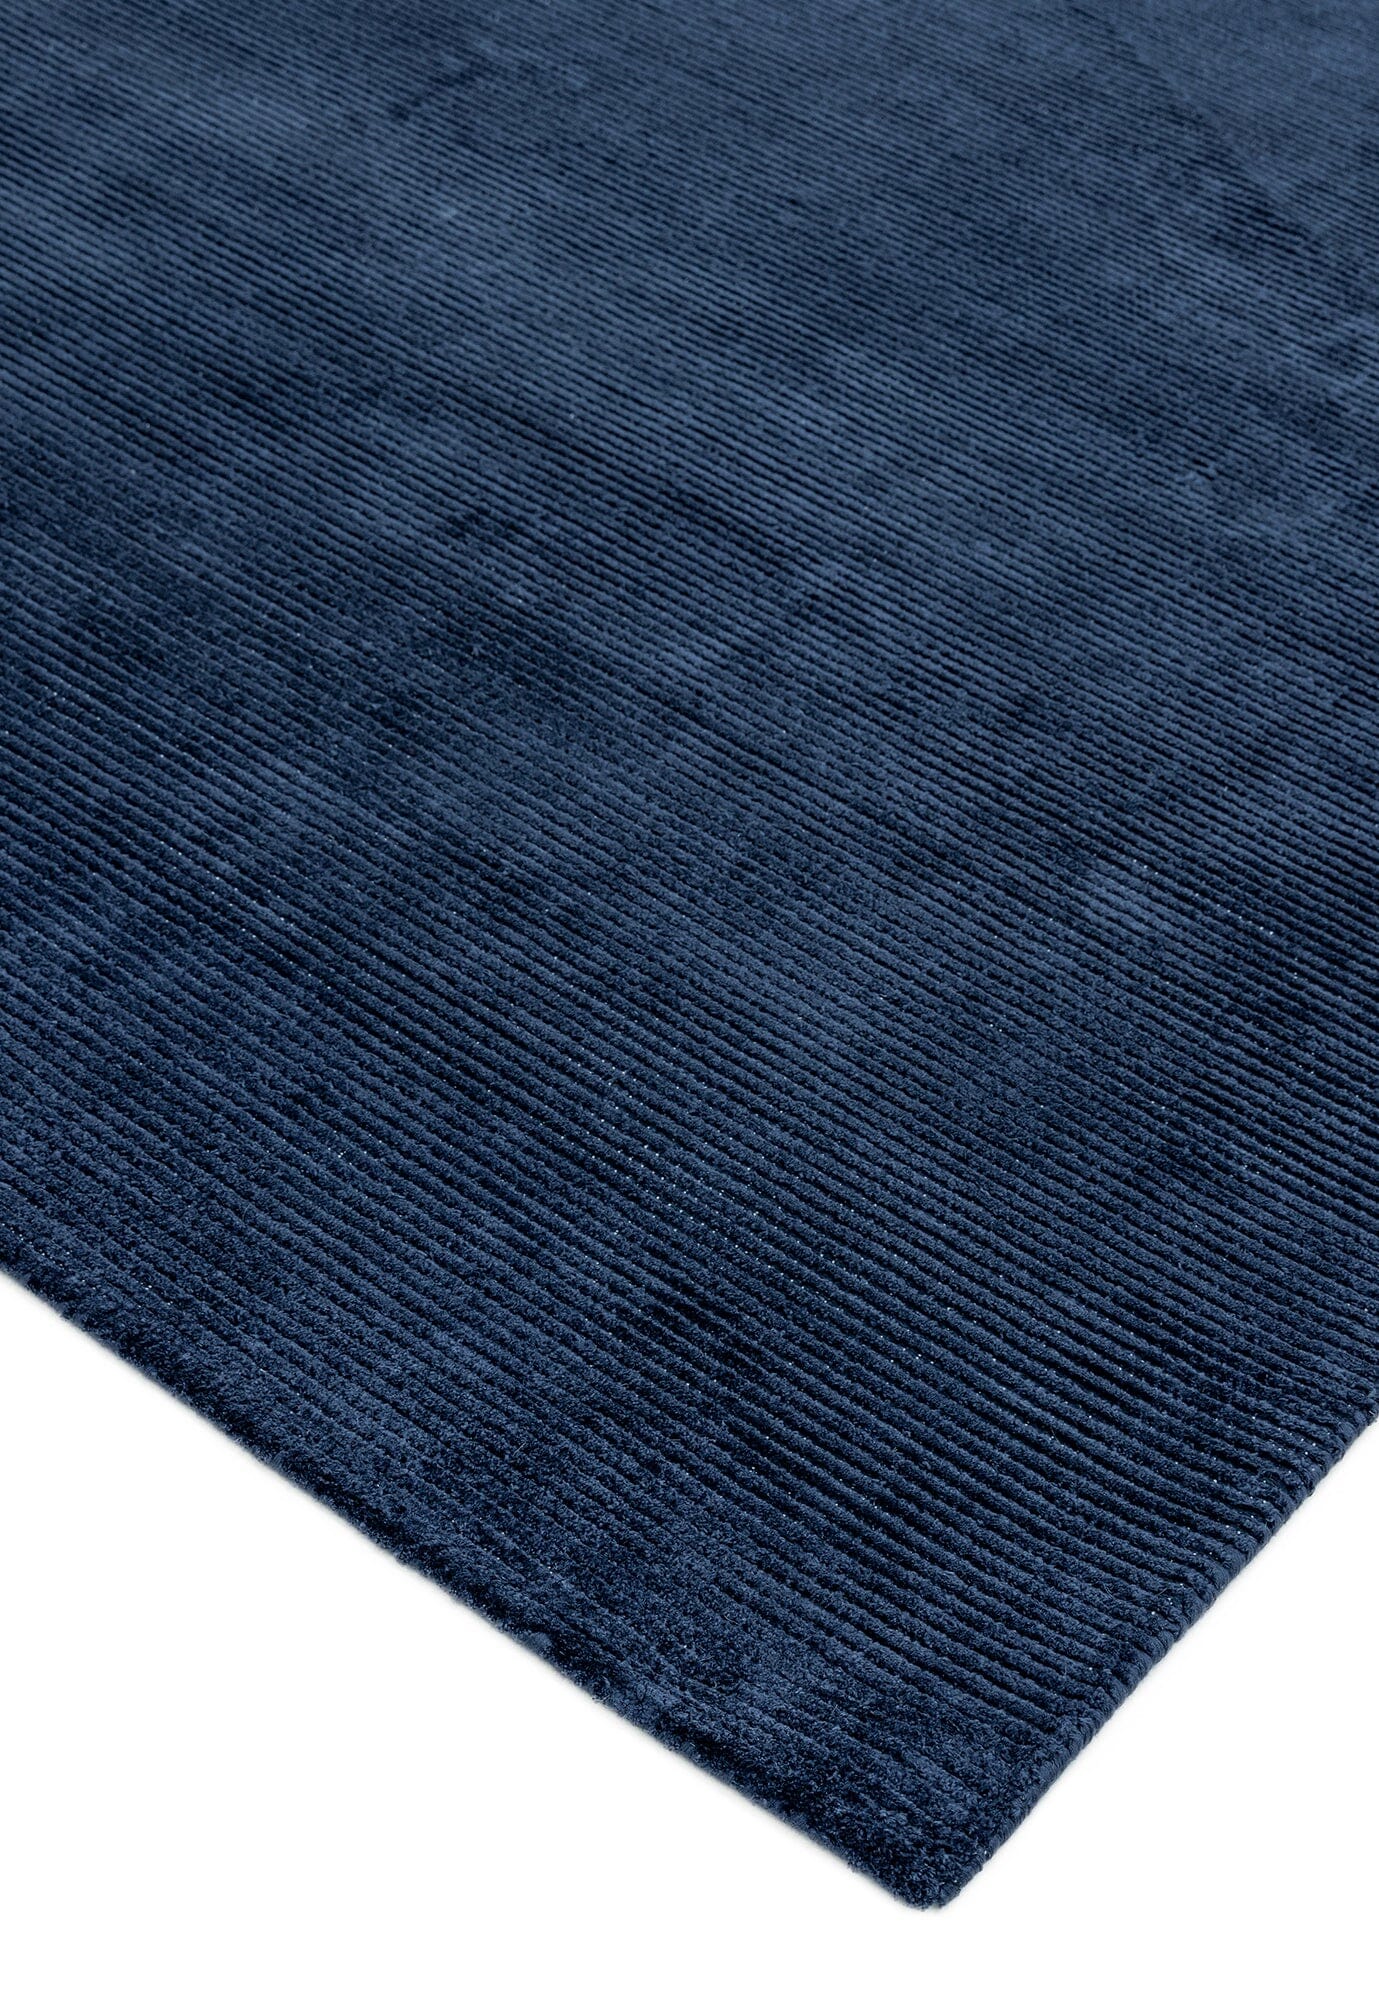 Asiatic Carpets Reko Hand Woven Rug Navy - 160 x 230cm